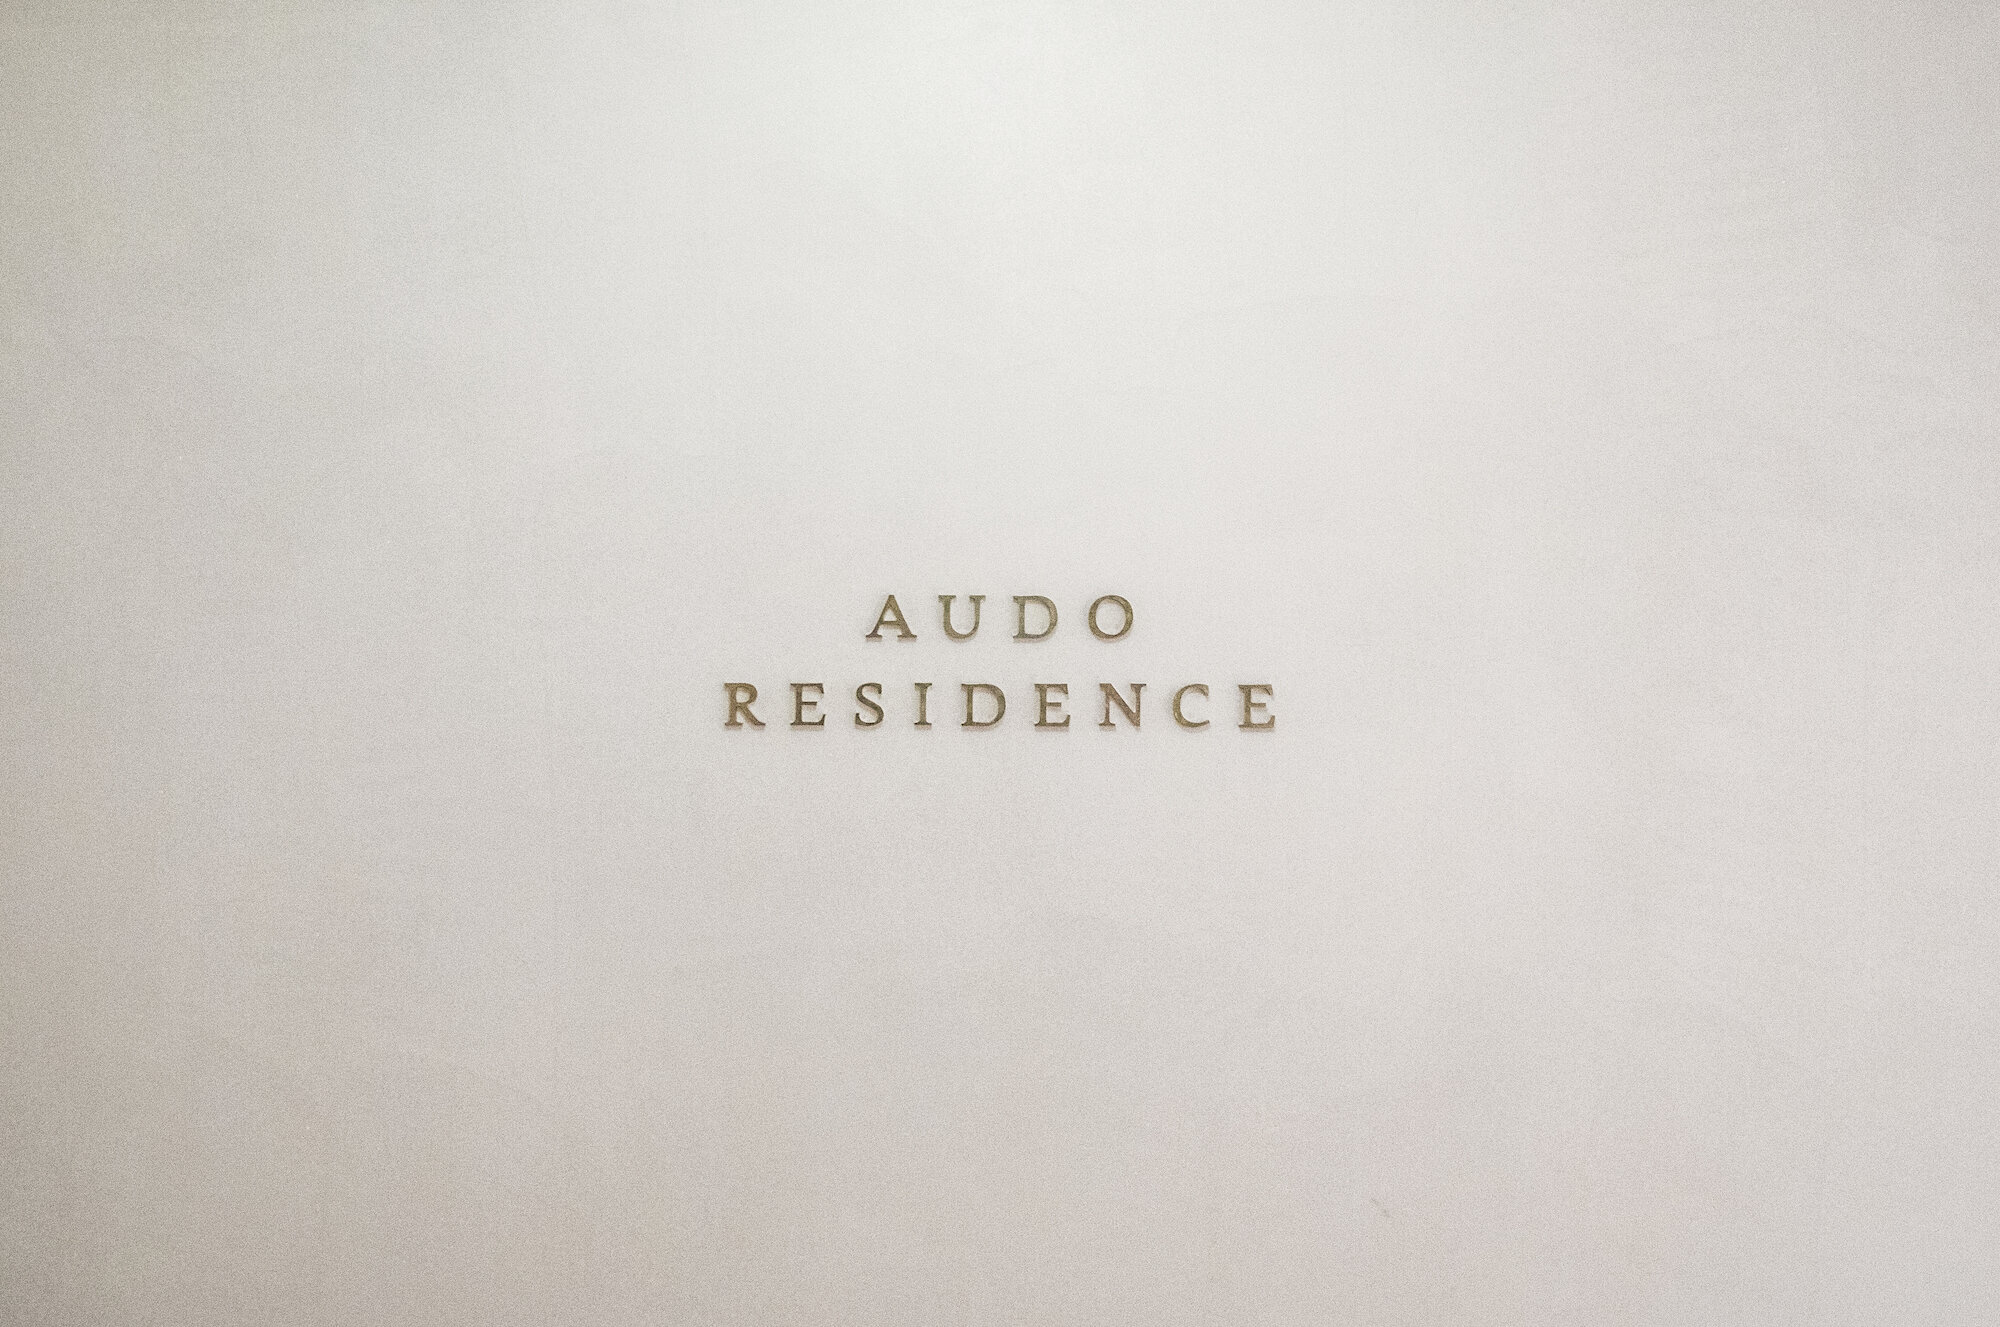 The Audo_Jonasbjerrepoulsen_Residence_08.jpg